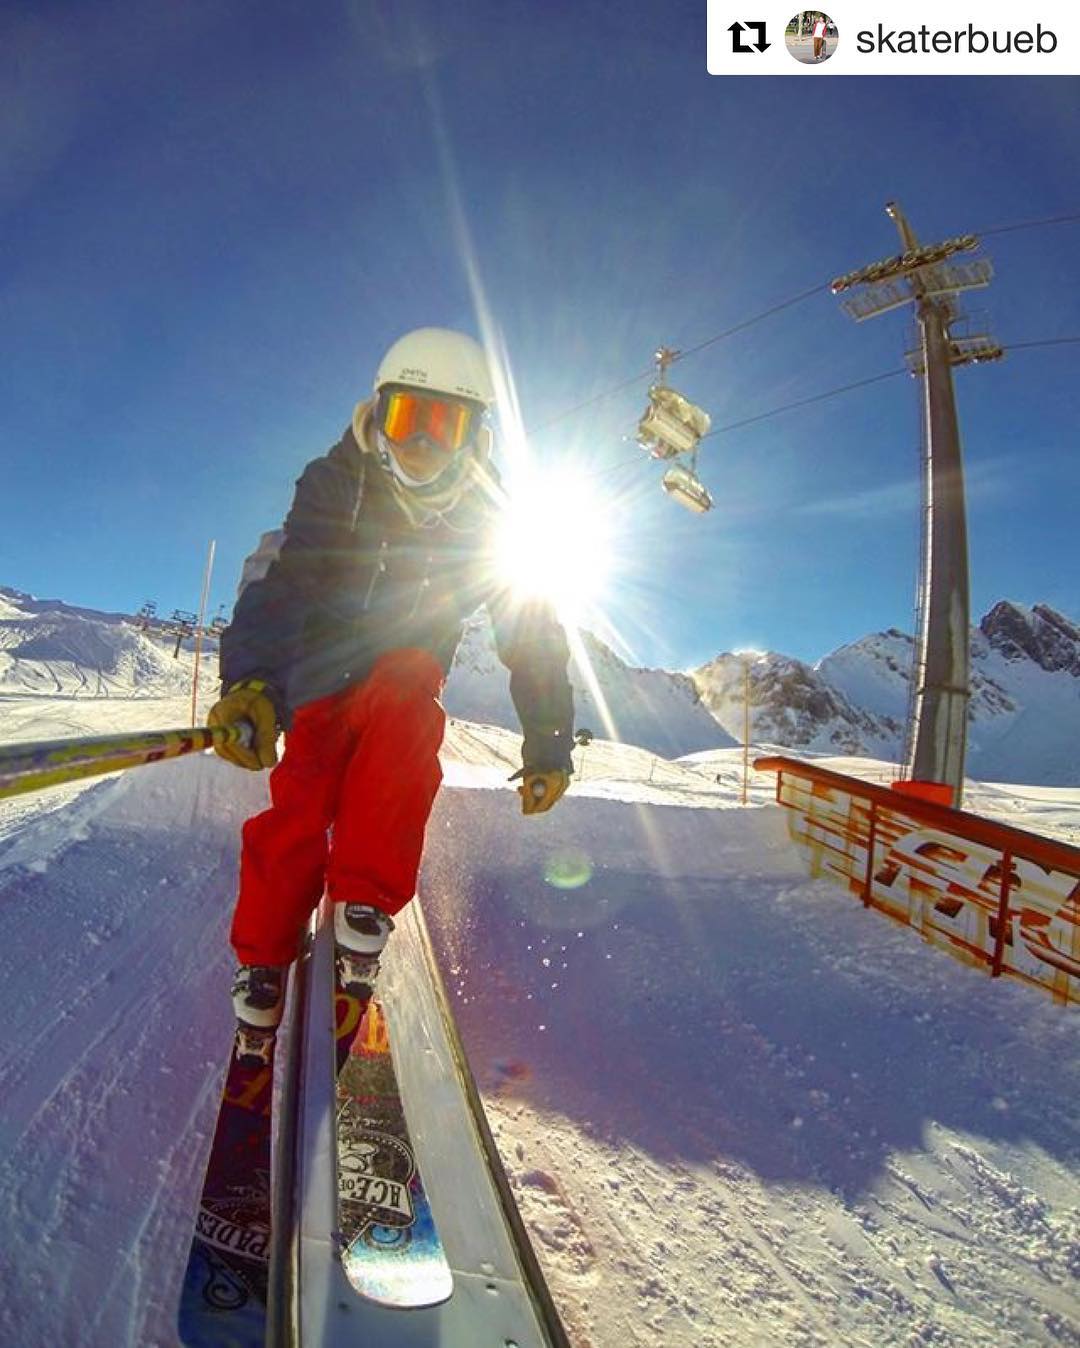 #Repost @skaterbueb Schnappschuss im @fruttpark ???・・・
ski slidin at #fruttpark #skiing #freeski #park #snow #sun #gopro #selfie #slide